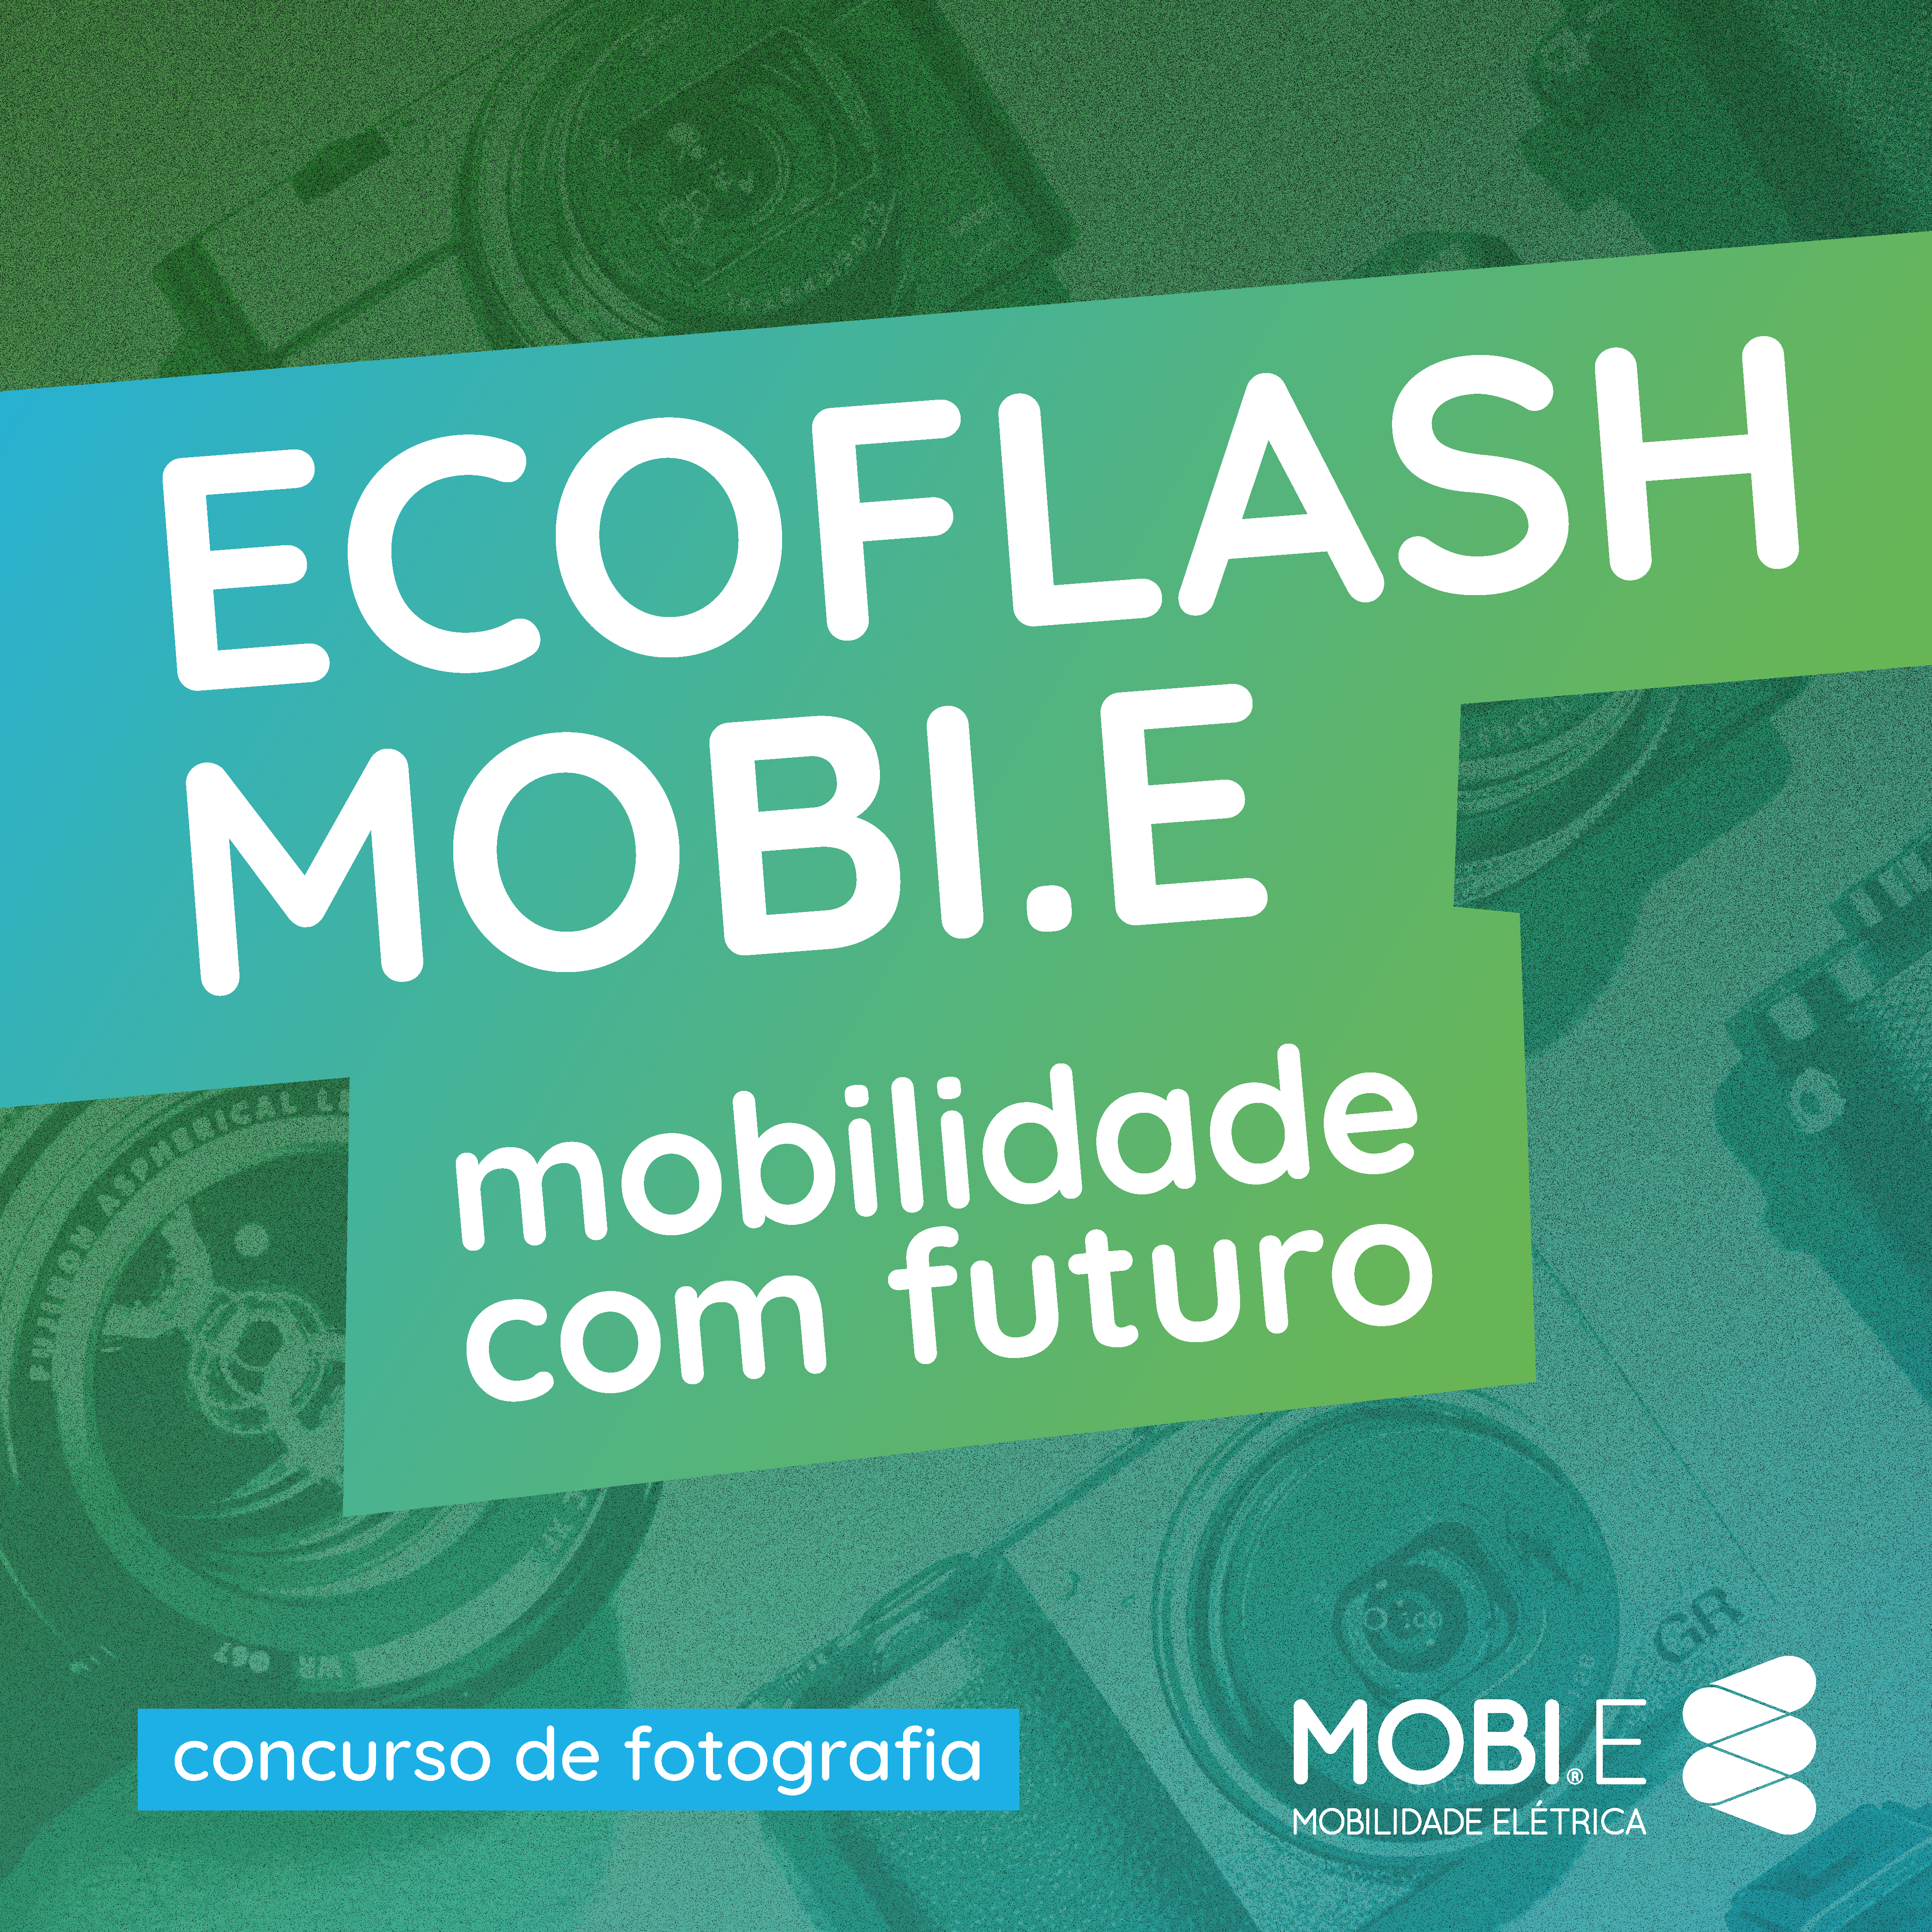 MOBI.E lança concurso de fotografia de natureza “ECO.Flash”